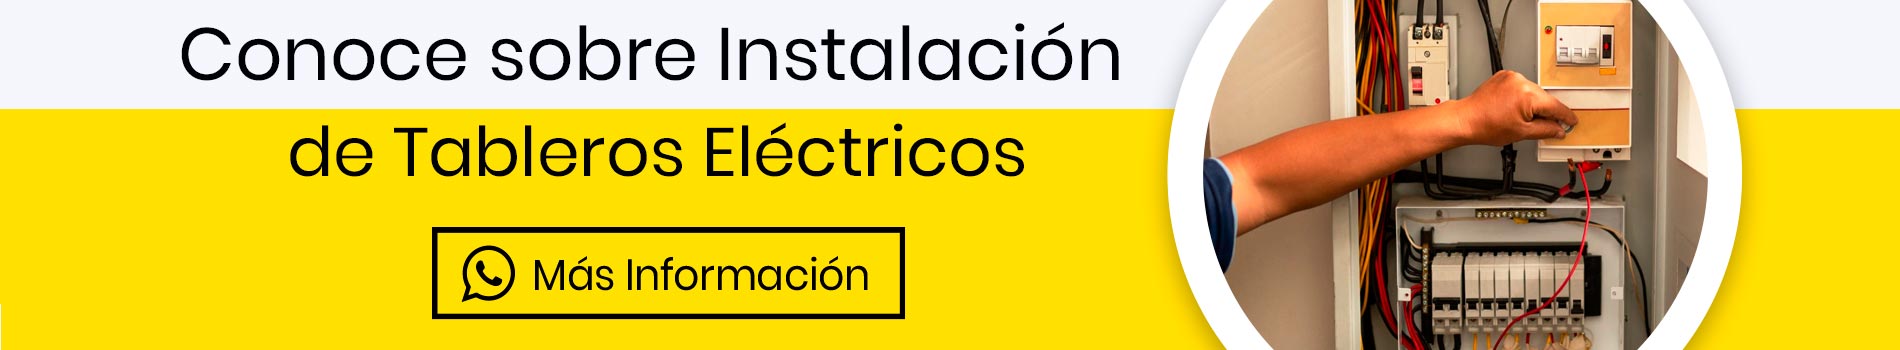 cta-tableros-electricos-instalacion-informacion-casa-lima